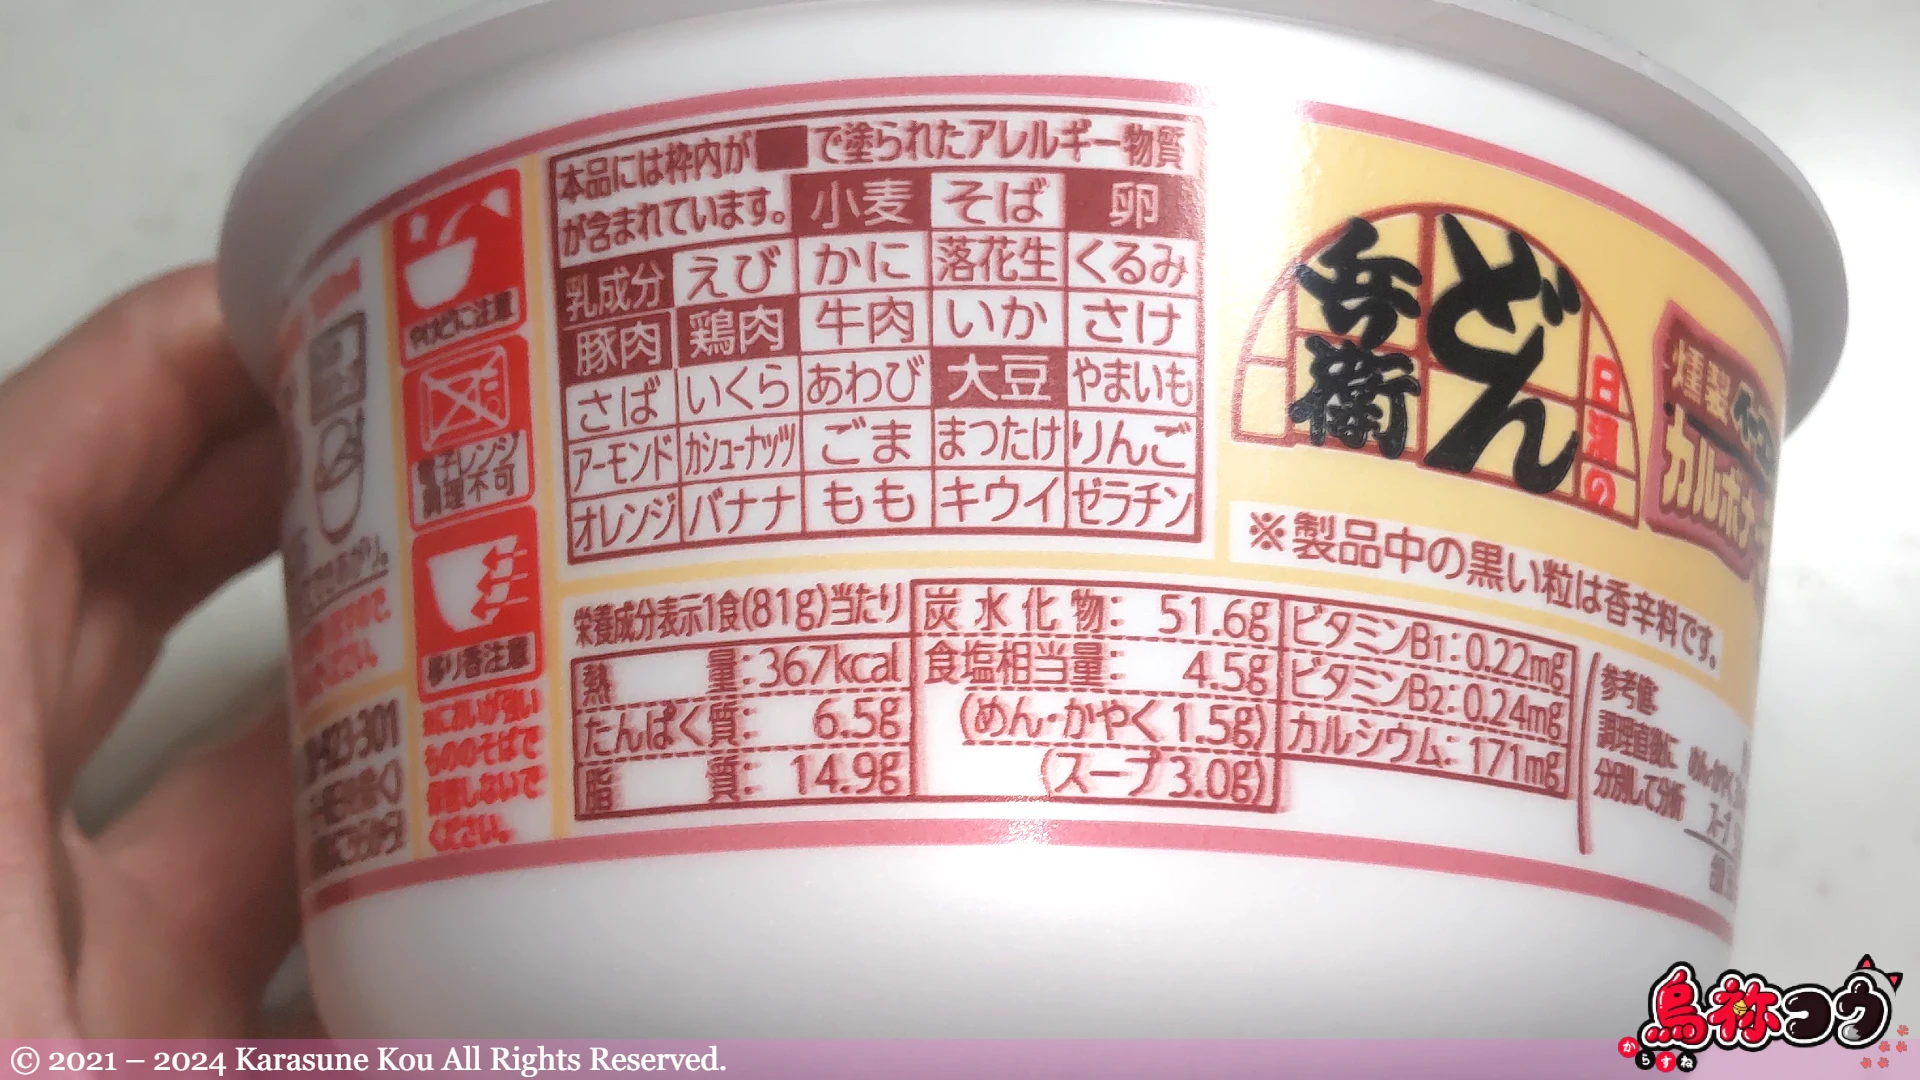 日清のどん兵衛 燻製ベーコンのカルボナーラうどんのカップの横に書かれた栄養成分表示とアレルゲン物質情報です